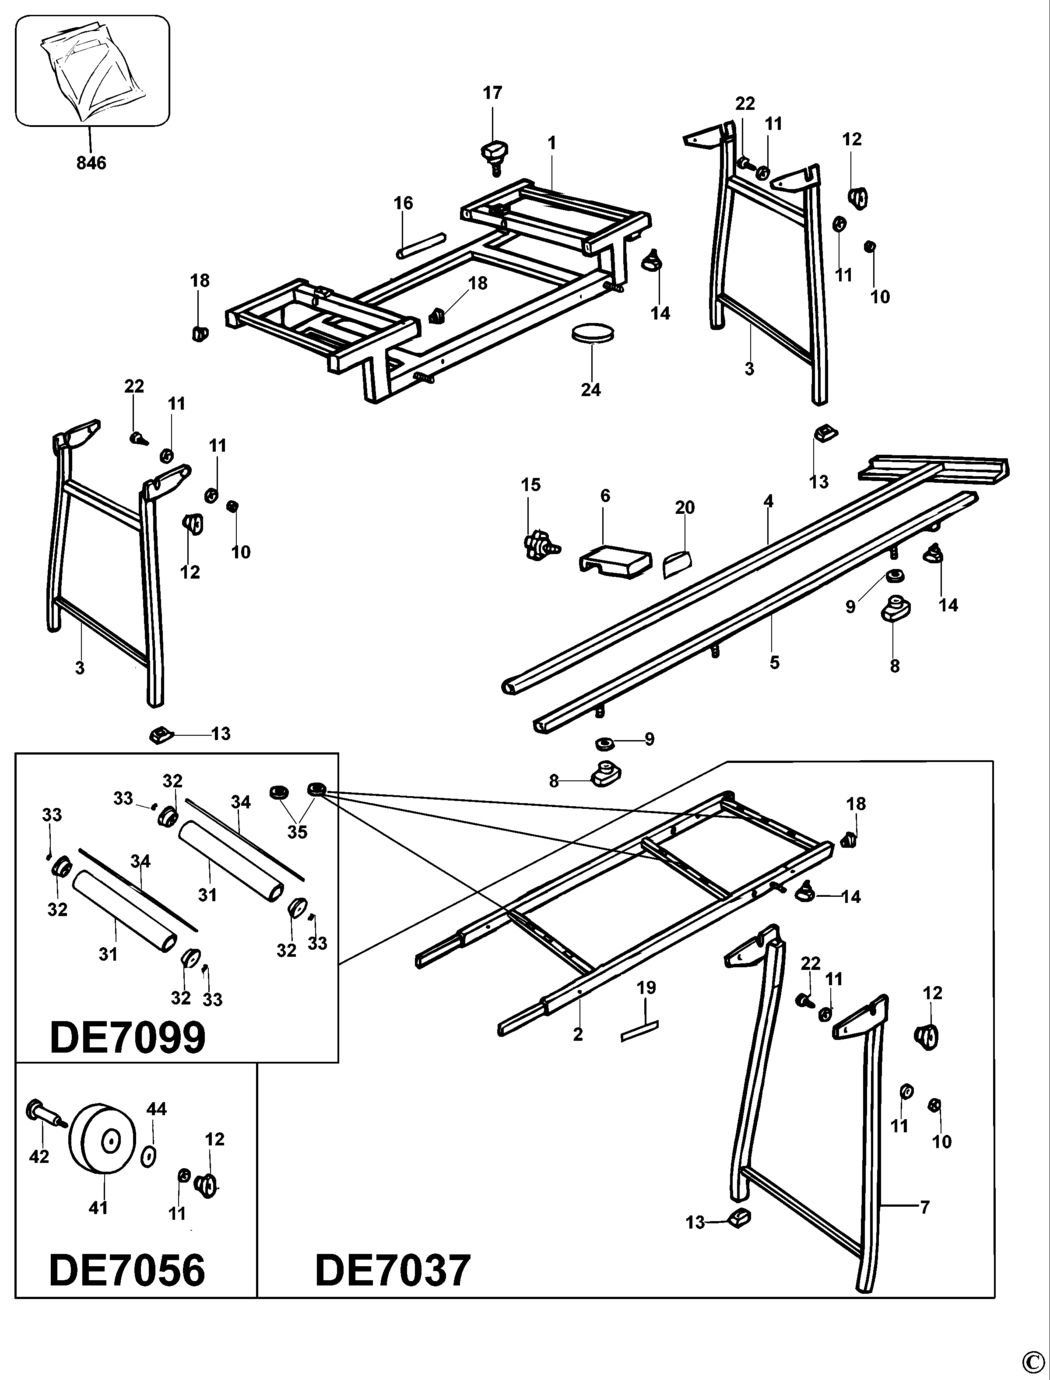 Dewalt DE7038 Type 4 Extension Table Spare Parts